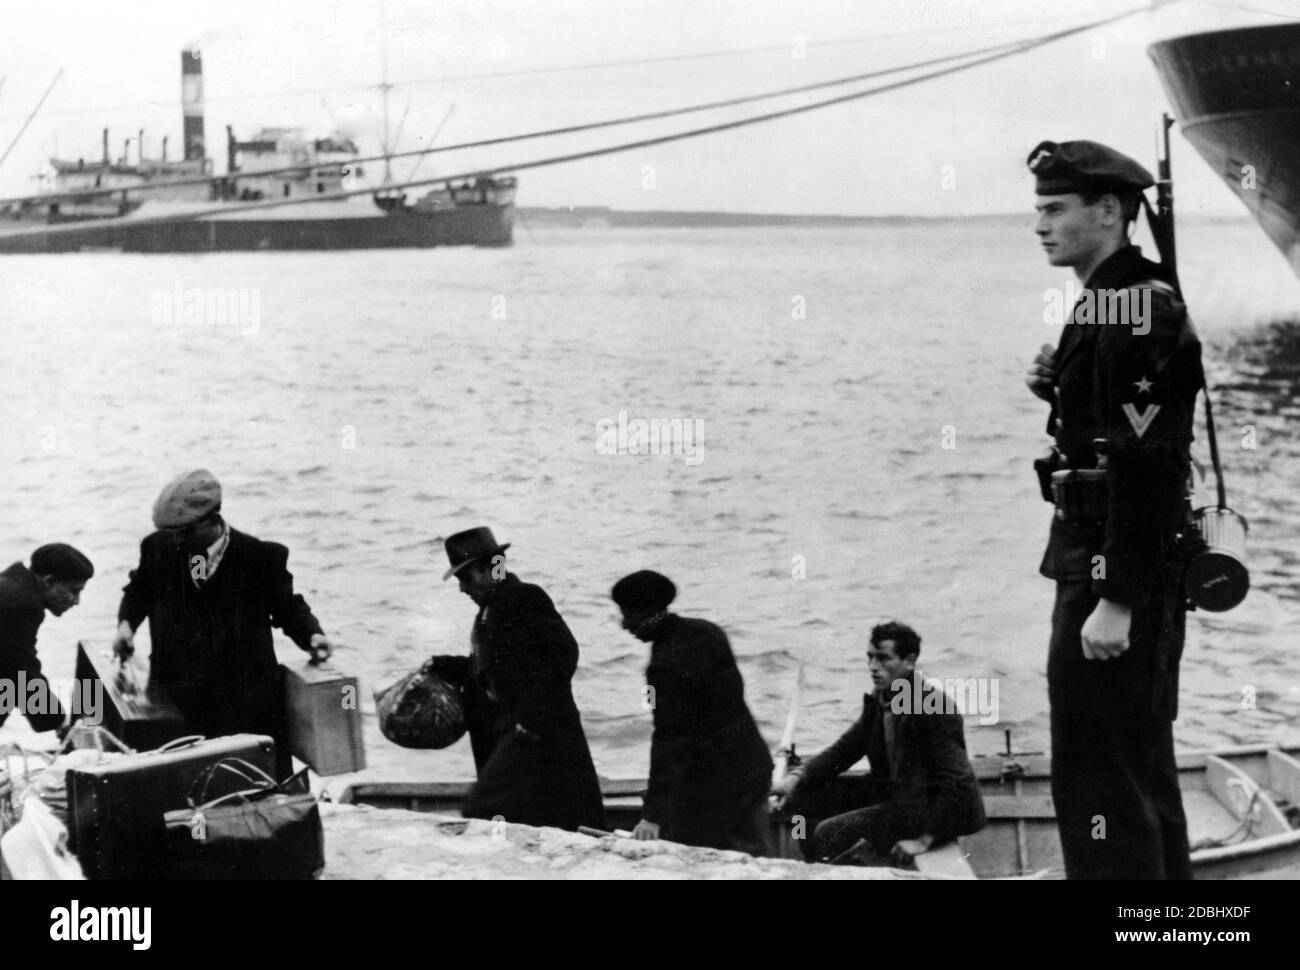 Un soldado alemán está de guardia en el Mar Mediterráneo en el puerto de una ciudad en el sur de Francia. Delante de él los pescadores están trabajando en su barco. Foto de stock